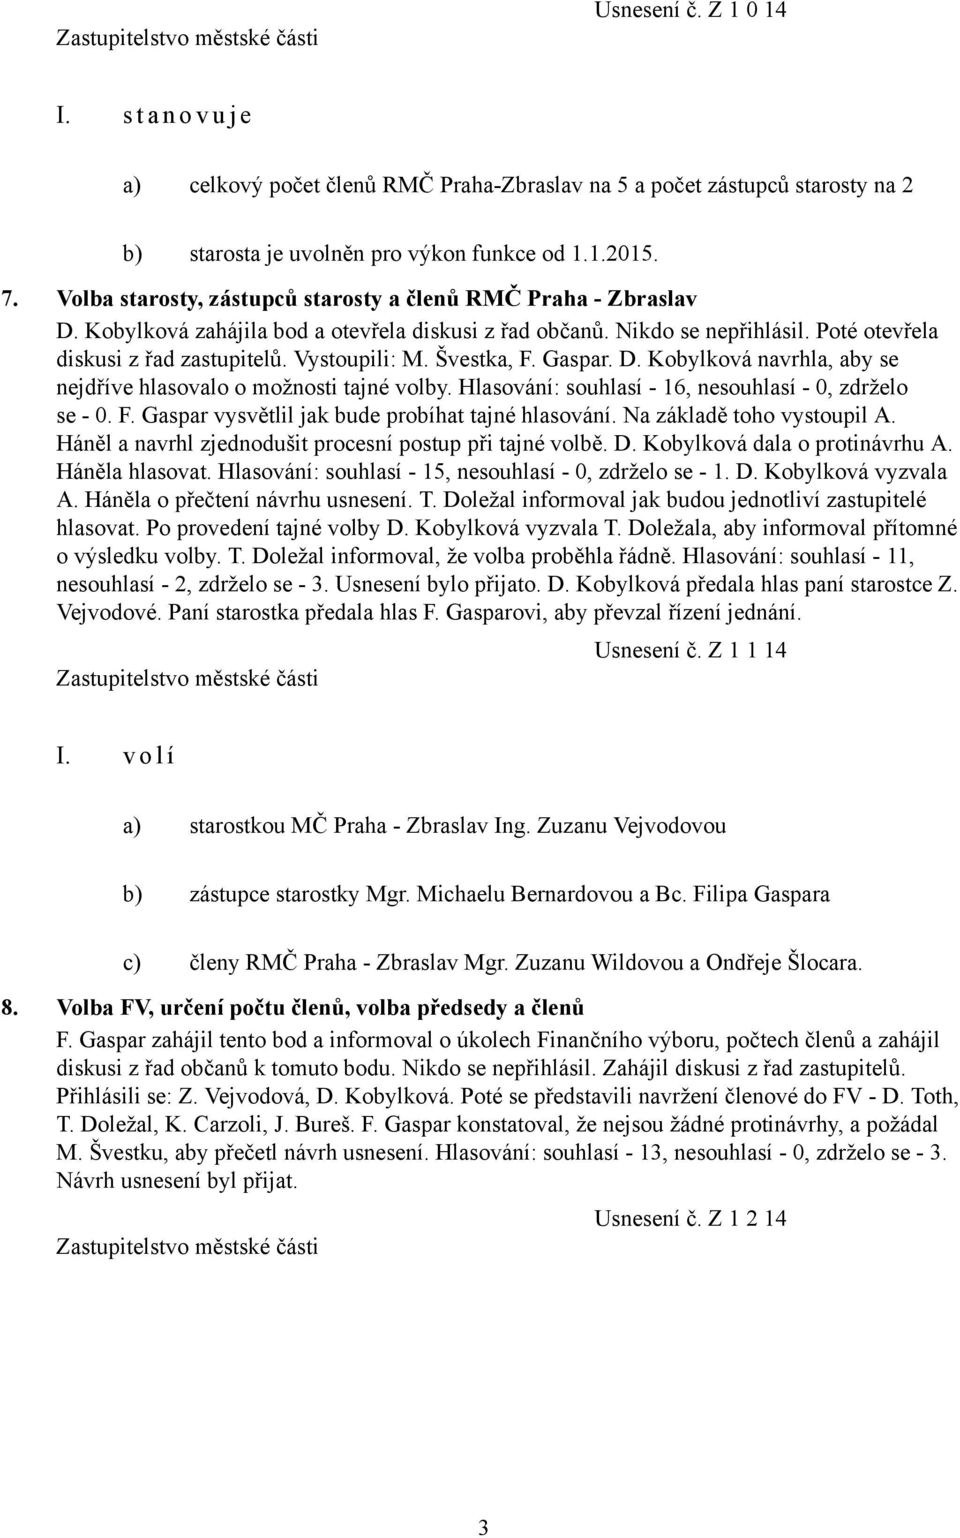 Švestka, F. Gaspar. D. Kobylková navrhla, aby se nejdříve hlasovalo o možnosti tajné volby. Hlasování: souhlasí - 16, nesouhlasí - 0, zdrželo se - 0. F. Gaspar vysvětlil jak bude probíhat tajné hlasování.